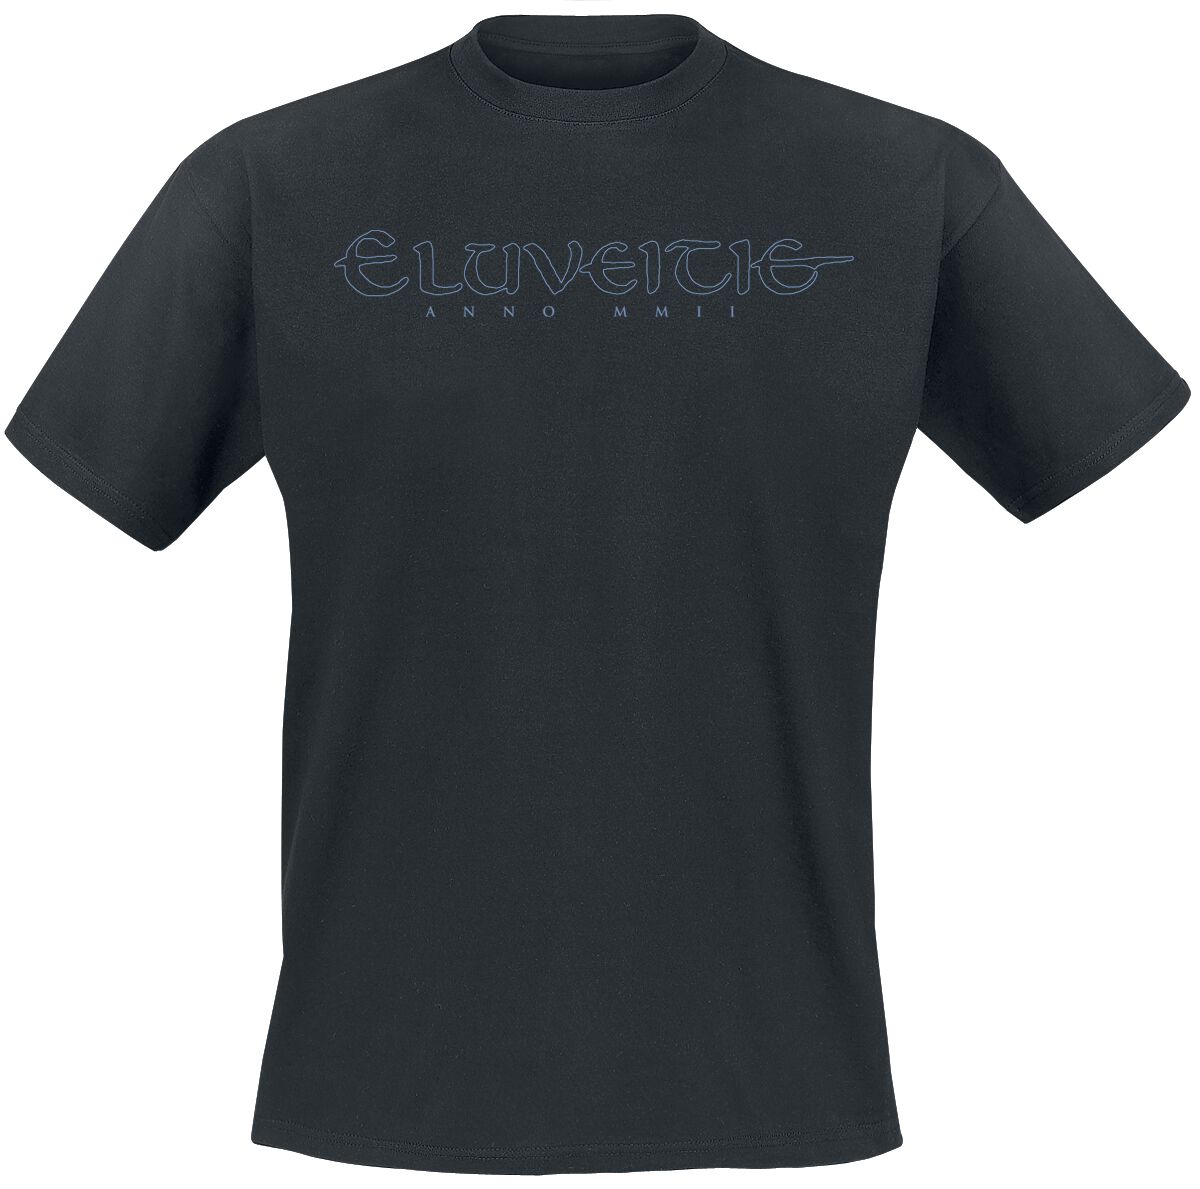 Eluveitie T-Shirt - Triskel - S bis M - für Männer - Größe M - schwarz  - Lizenziertes Merchandise!